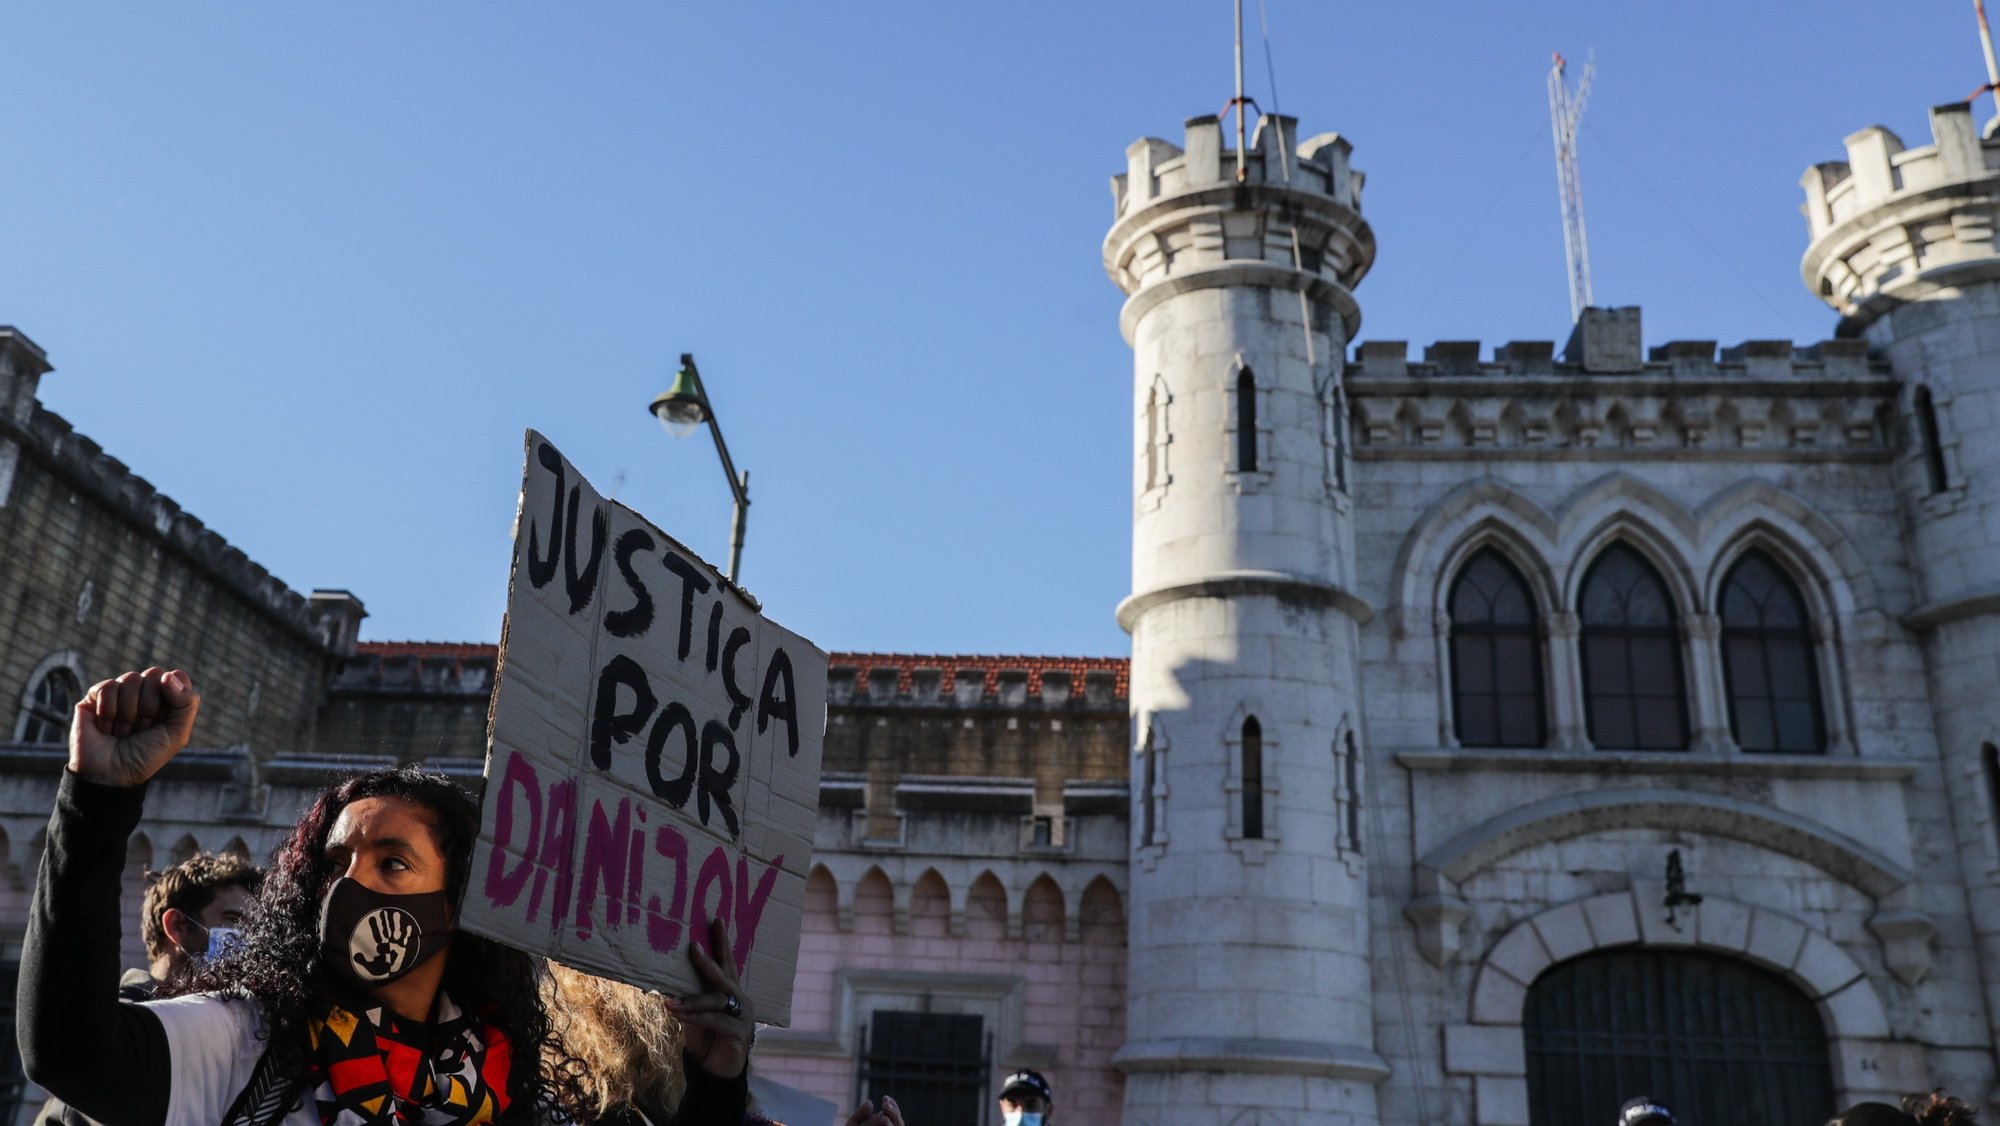 Cerca de uma centena de manifestantes concentraram-se por Danijoy Pontes, falecido no dia 15 de setembro no Estabelecimento Prisional de Lisboa (EPL) &quot;contra todas as prisões&quot;, parte de uma iniciativa do Movimento Negro Portugal (MNP), que une organizações do movimento negro, antirracista, de defesa dos direitos dos migrantes e da sociedade civil, em frente ao Estabelecimento Prisional de Lisboa, 06 de novembro de 2021. TIAGO PETINGA/LUSA